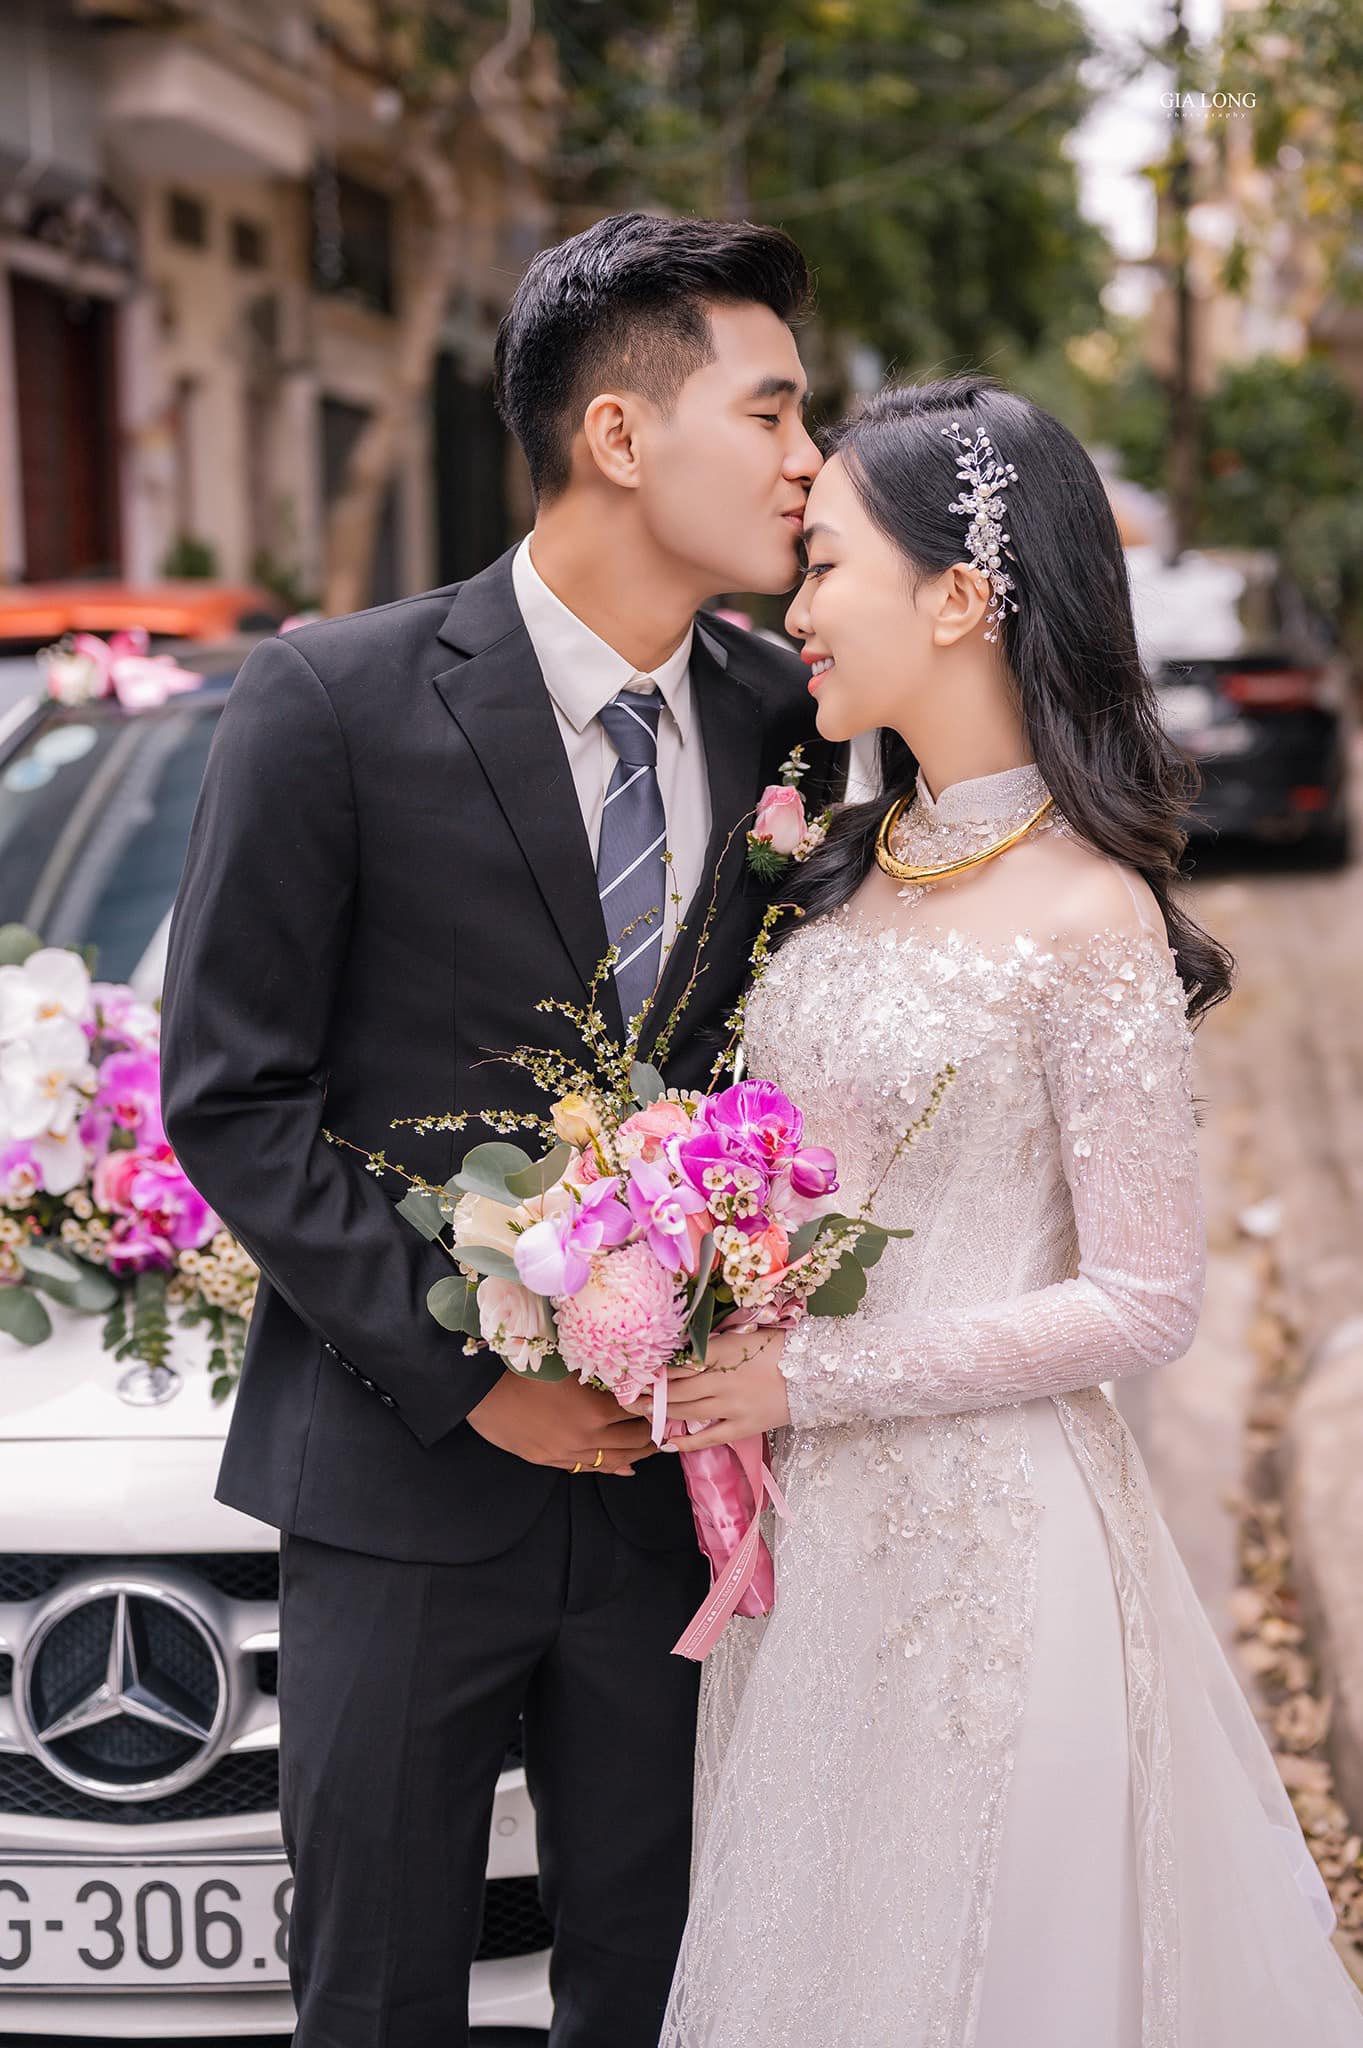 Cô dâu làng bóng đá Việt được tặng vàng ngày cưới hỏi, đoán xem của ai ''nặng'' nhất? - ảnh 8